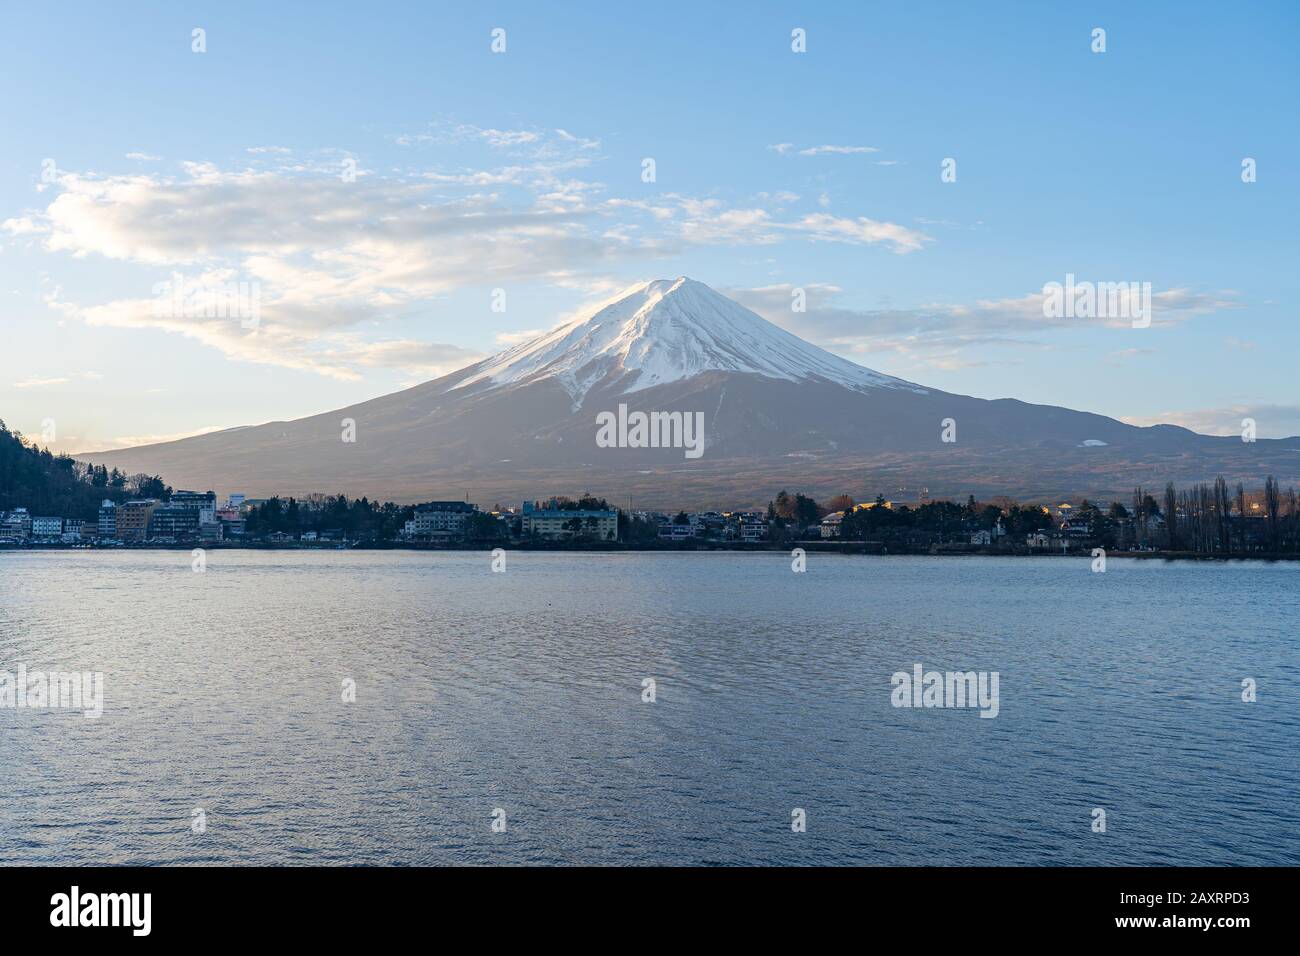 Mount Fuji and Lake Kawaguchiko in Yamanachi, Japan. Stock Photo